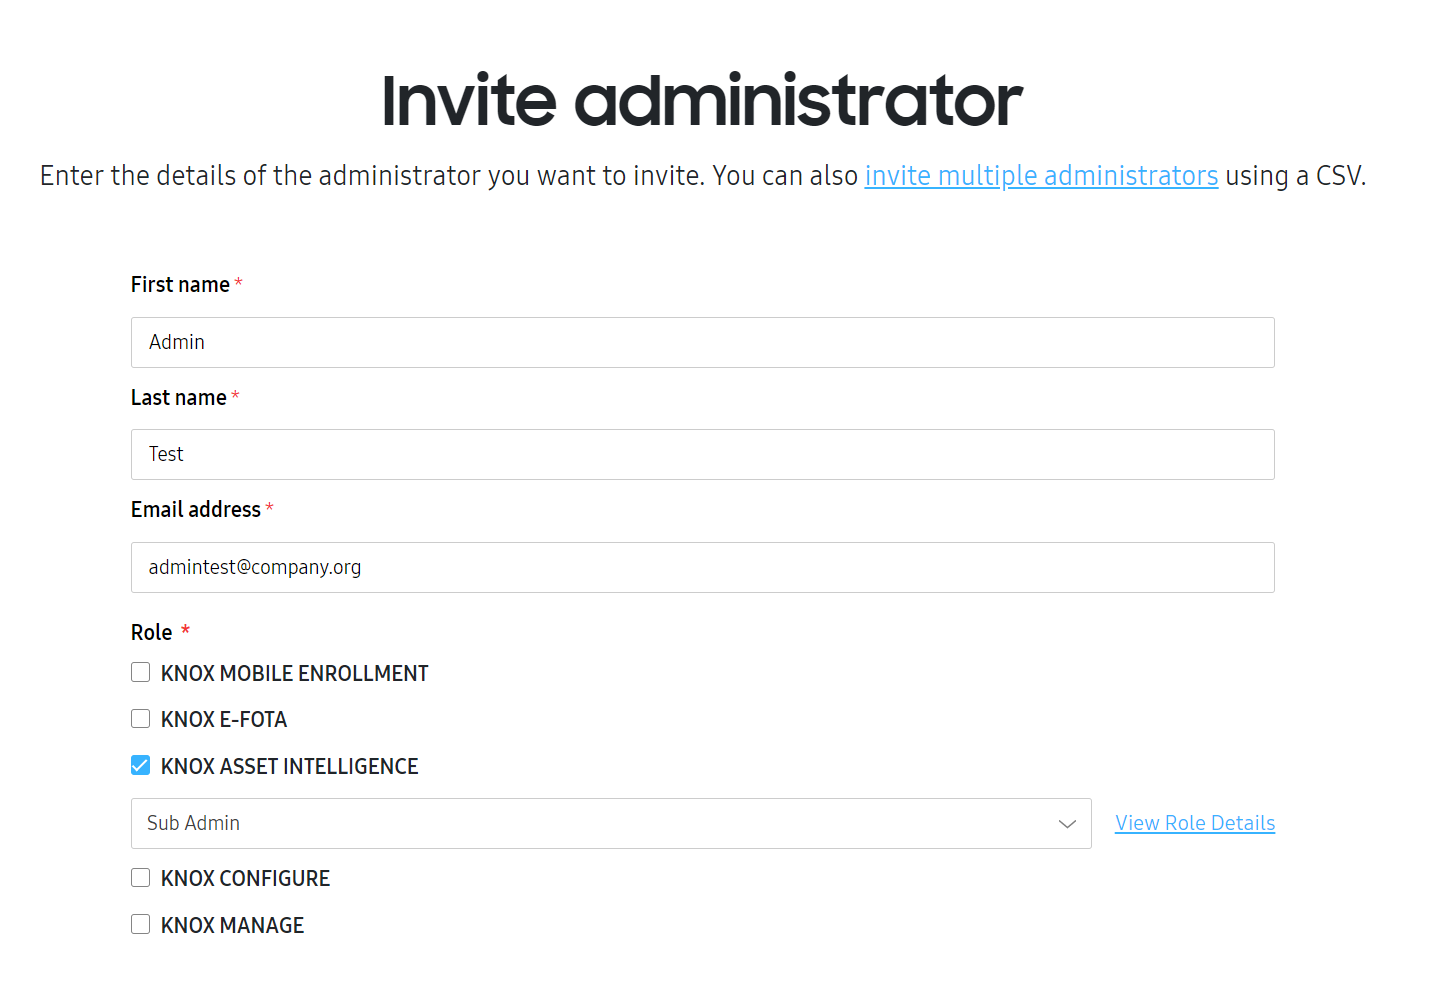 Invite administrator screen